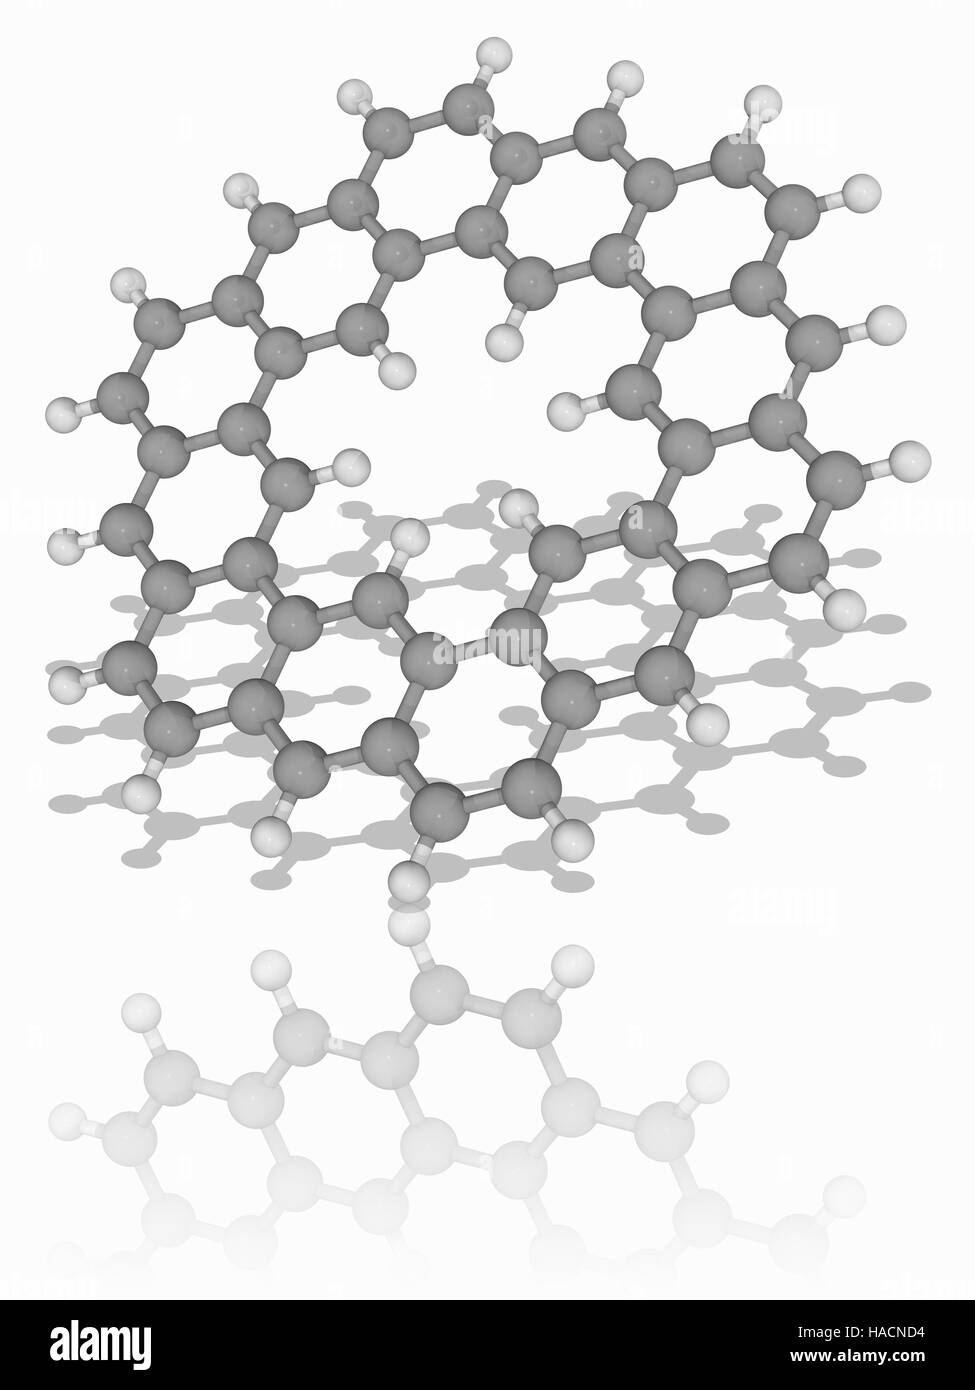 Kekulene. Molekülmodell von polyzyklischen aromatischen Kohlenwasserstoffen Kekulene (C48. H24), ein Beispiel für eine Circulene. Es wurde im Jahre 1978 erstmals synthetisiert. Es ist benannt nach August Kekul, Entdecker die Struktur der Benzolring. Atome als Kugeln dargestellt werden und sind farblich gekennzeichnet: Kohlenstoff (grau) und Wasserstoff (weiß). Abbildung. Stockfoto